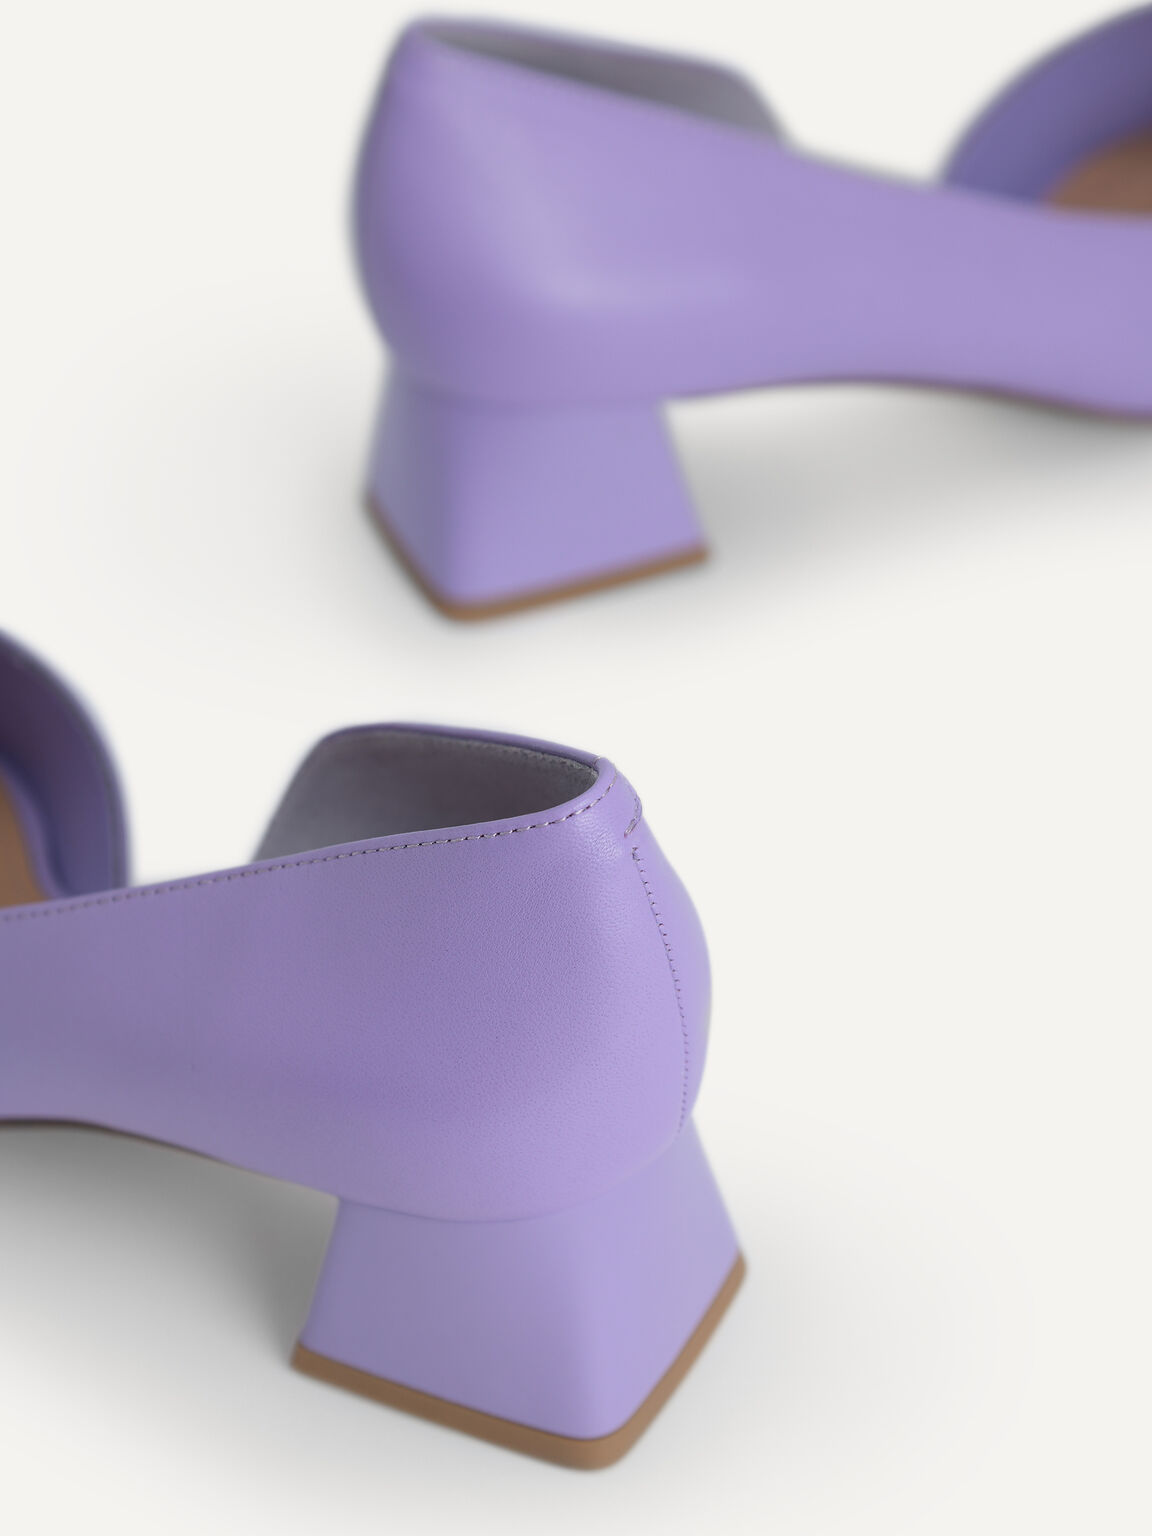 金屬裝飾皮革高跟鞋, 淡紫色, hi-res